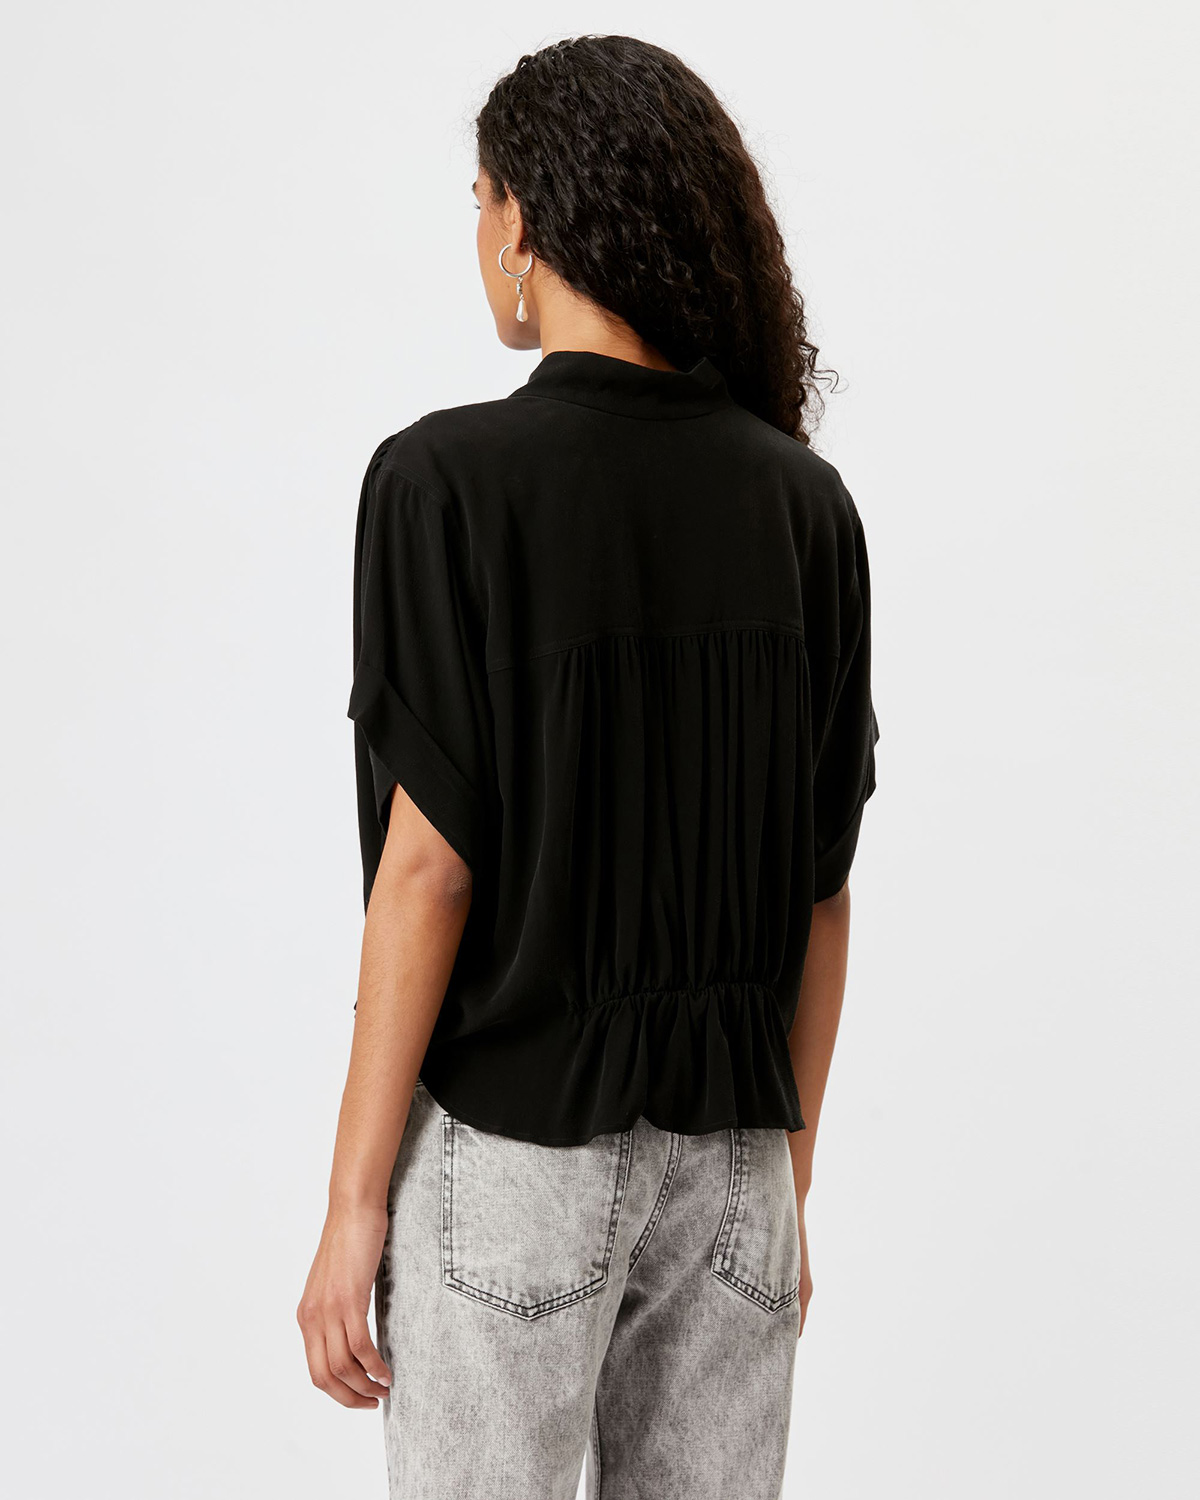 Top blouse court manches courtes en viscose noir Azalea Isabel Marant Etoile. Porté de dos.